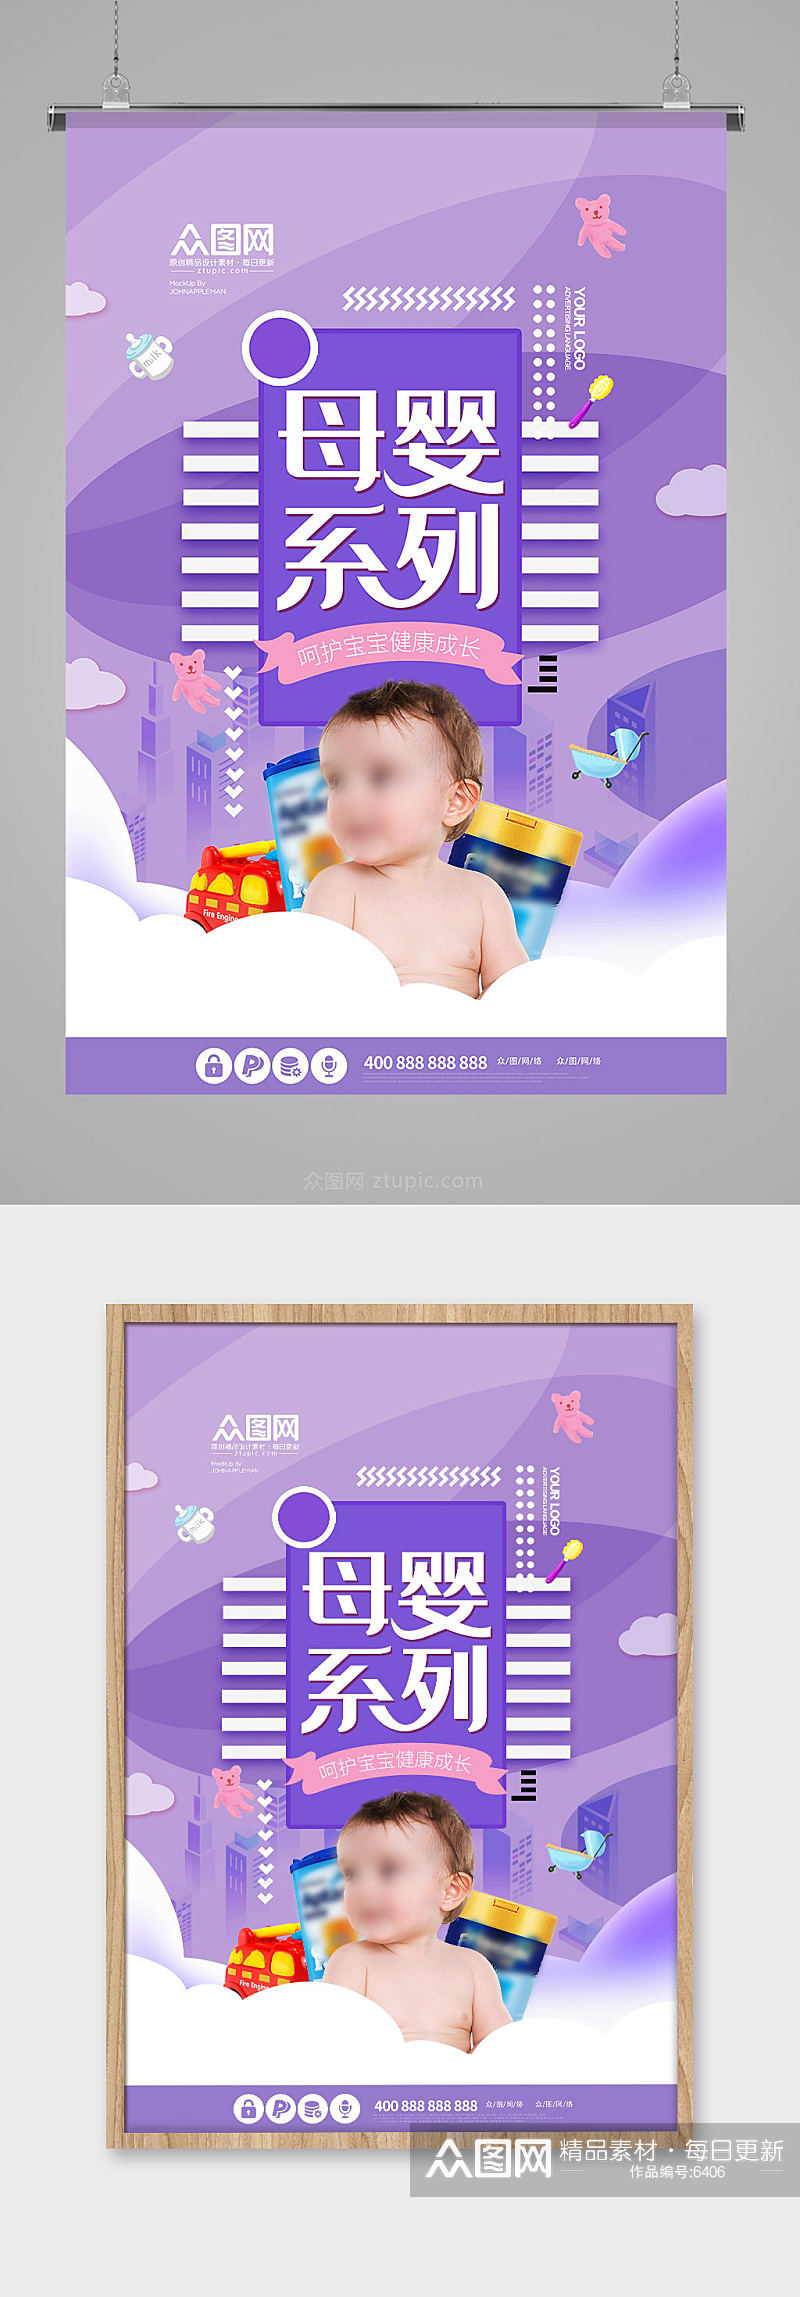 紫色时尚母婴用品活动海报素材